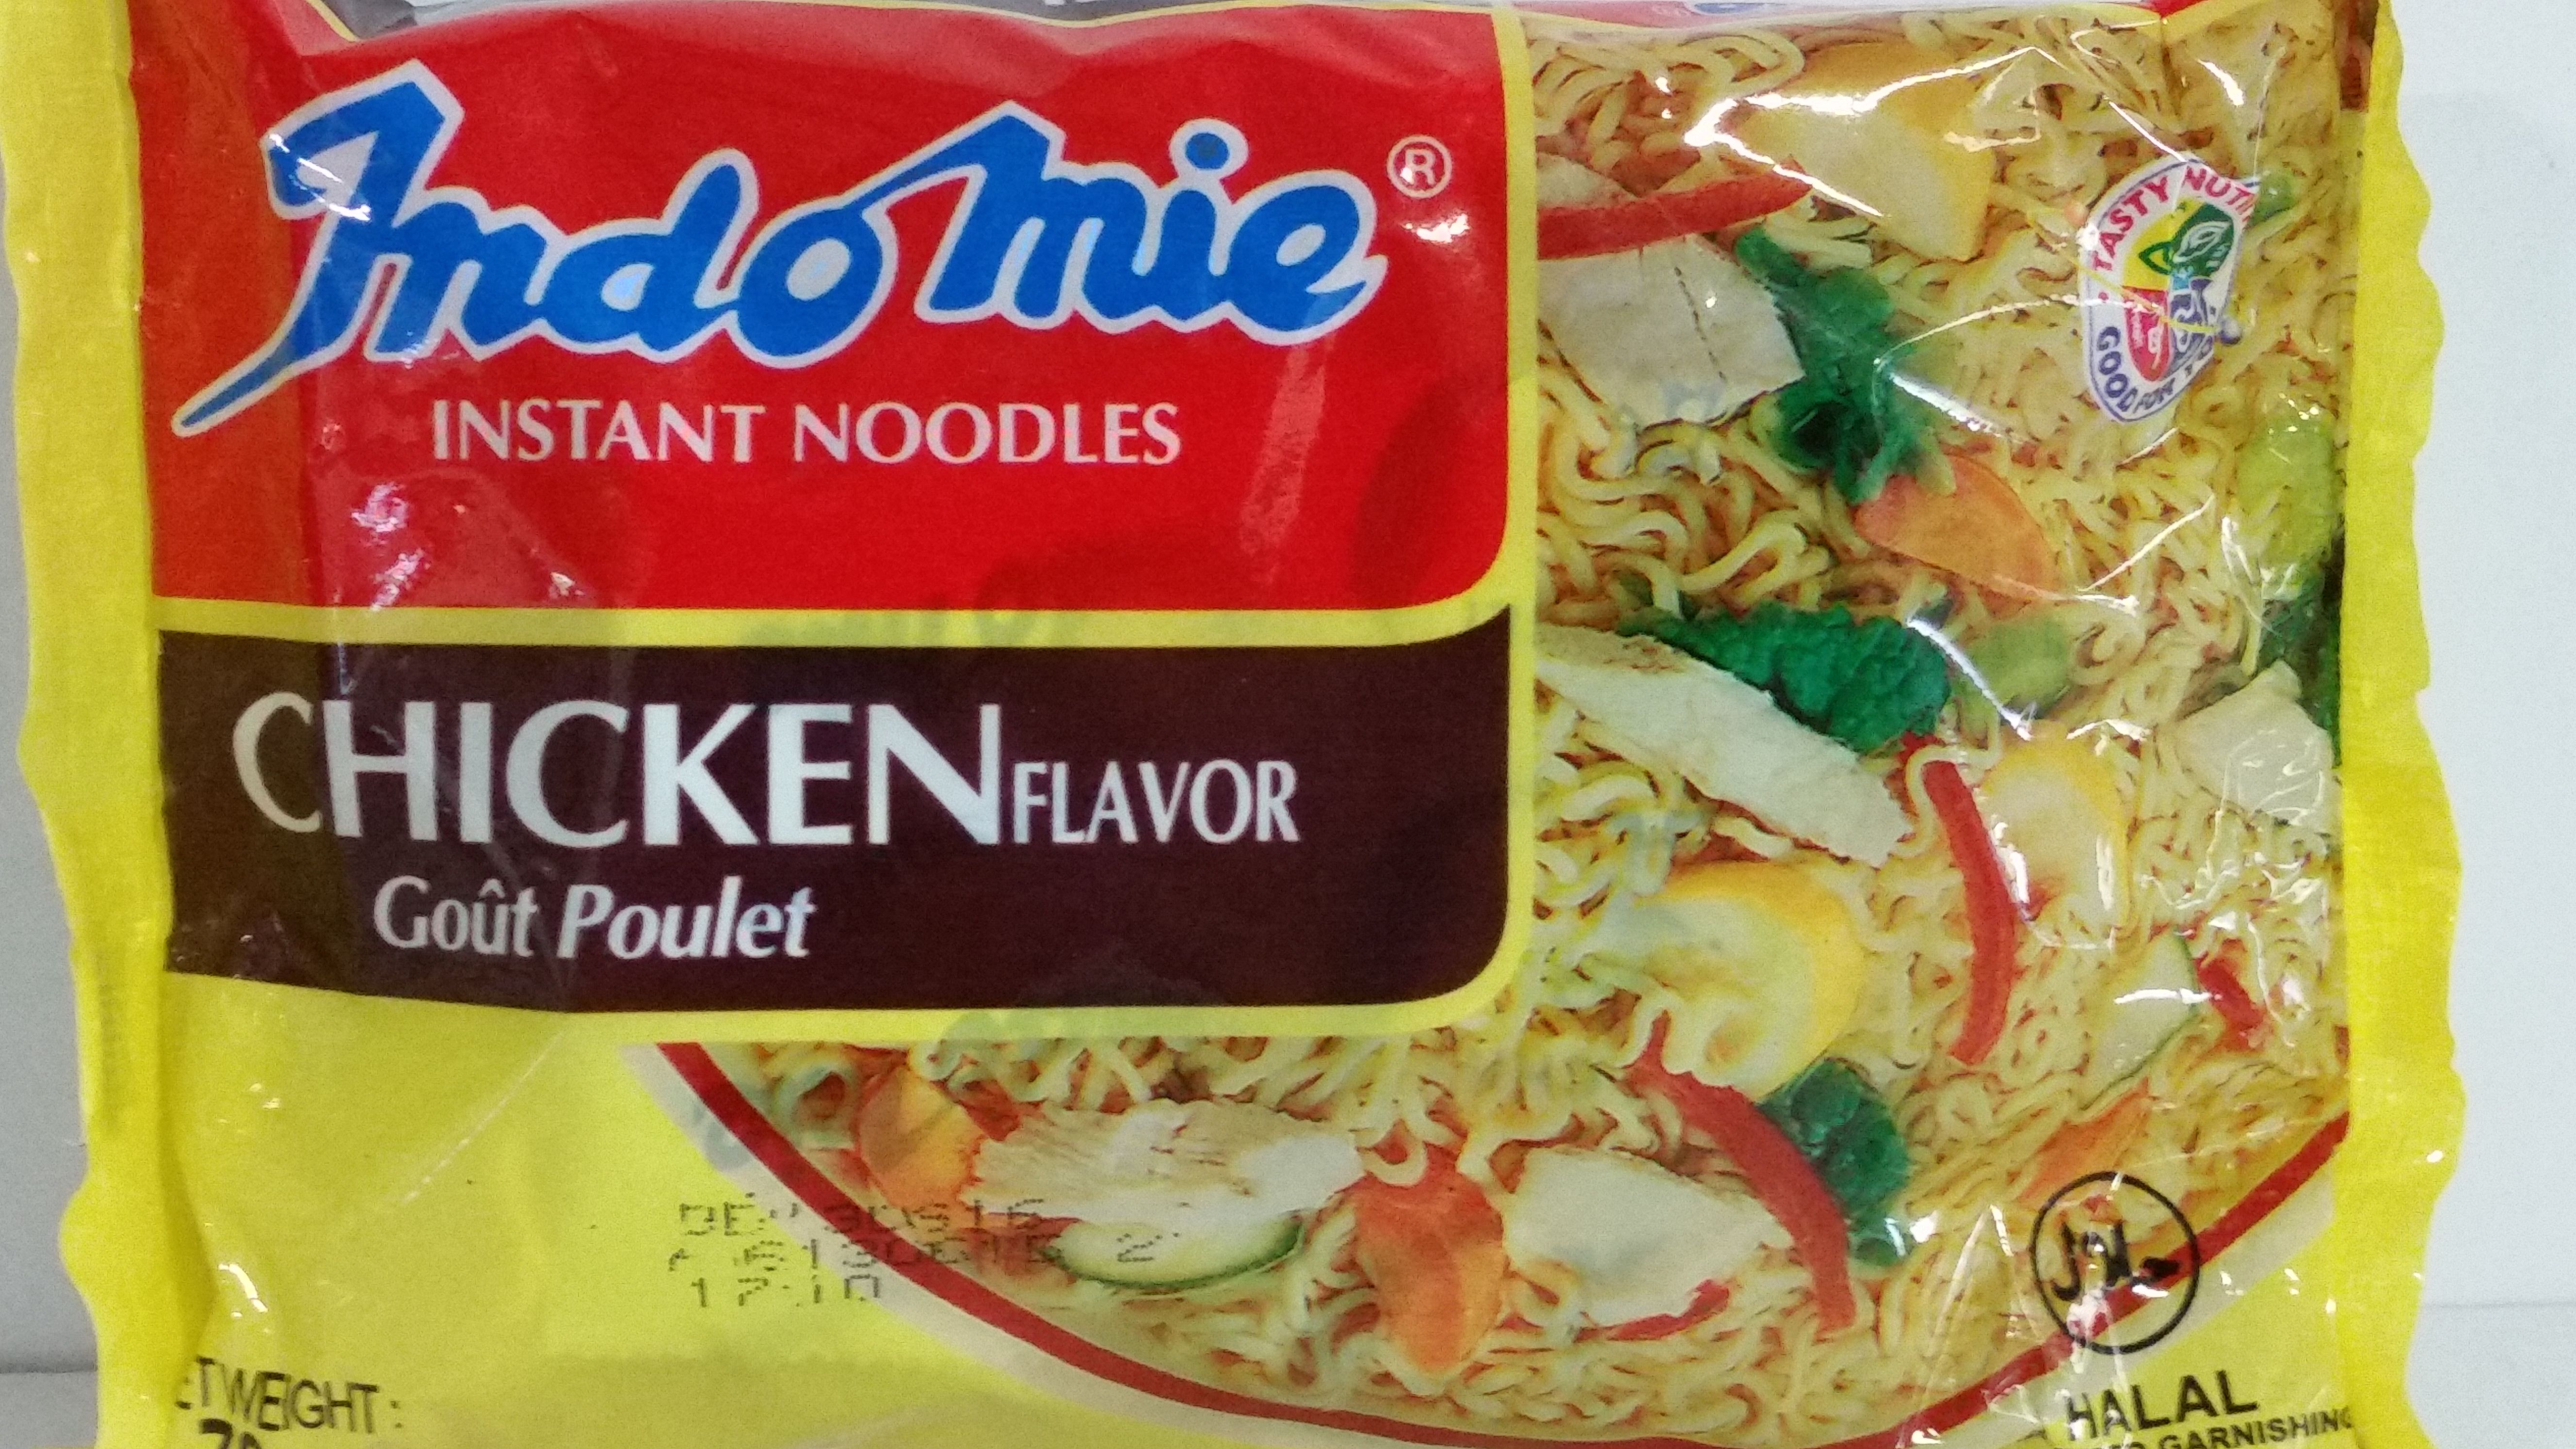 Indomi-Chicken Flavor Case (Indonesia)